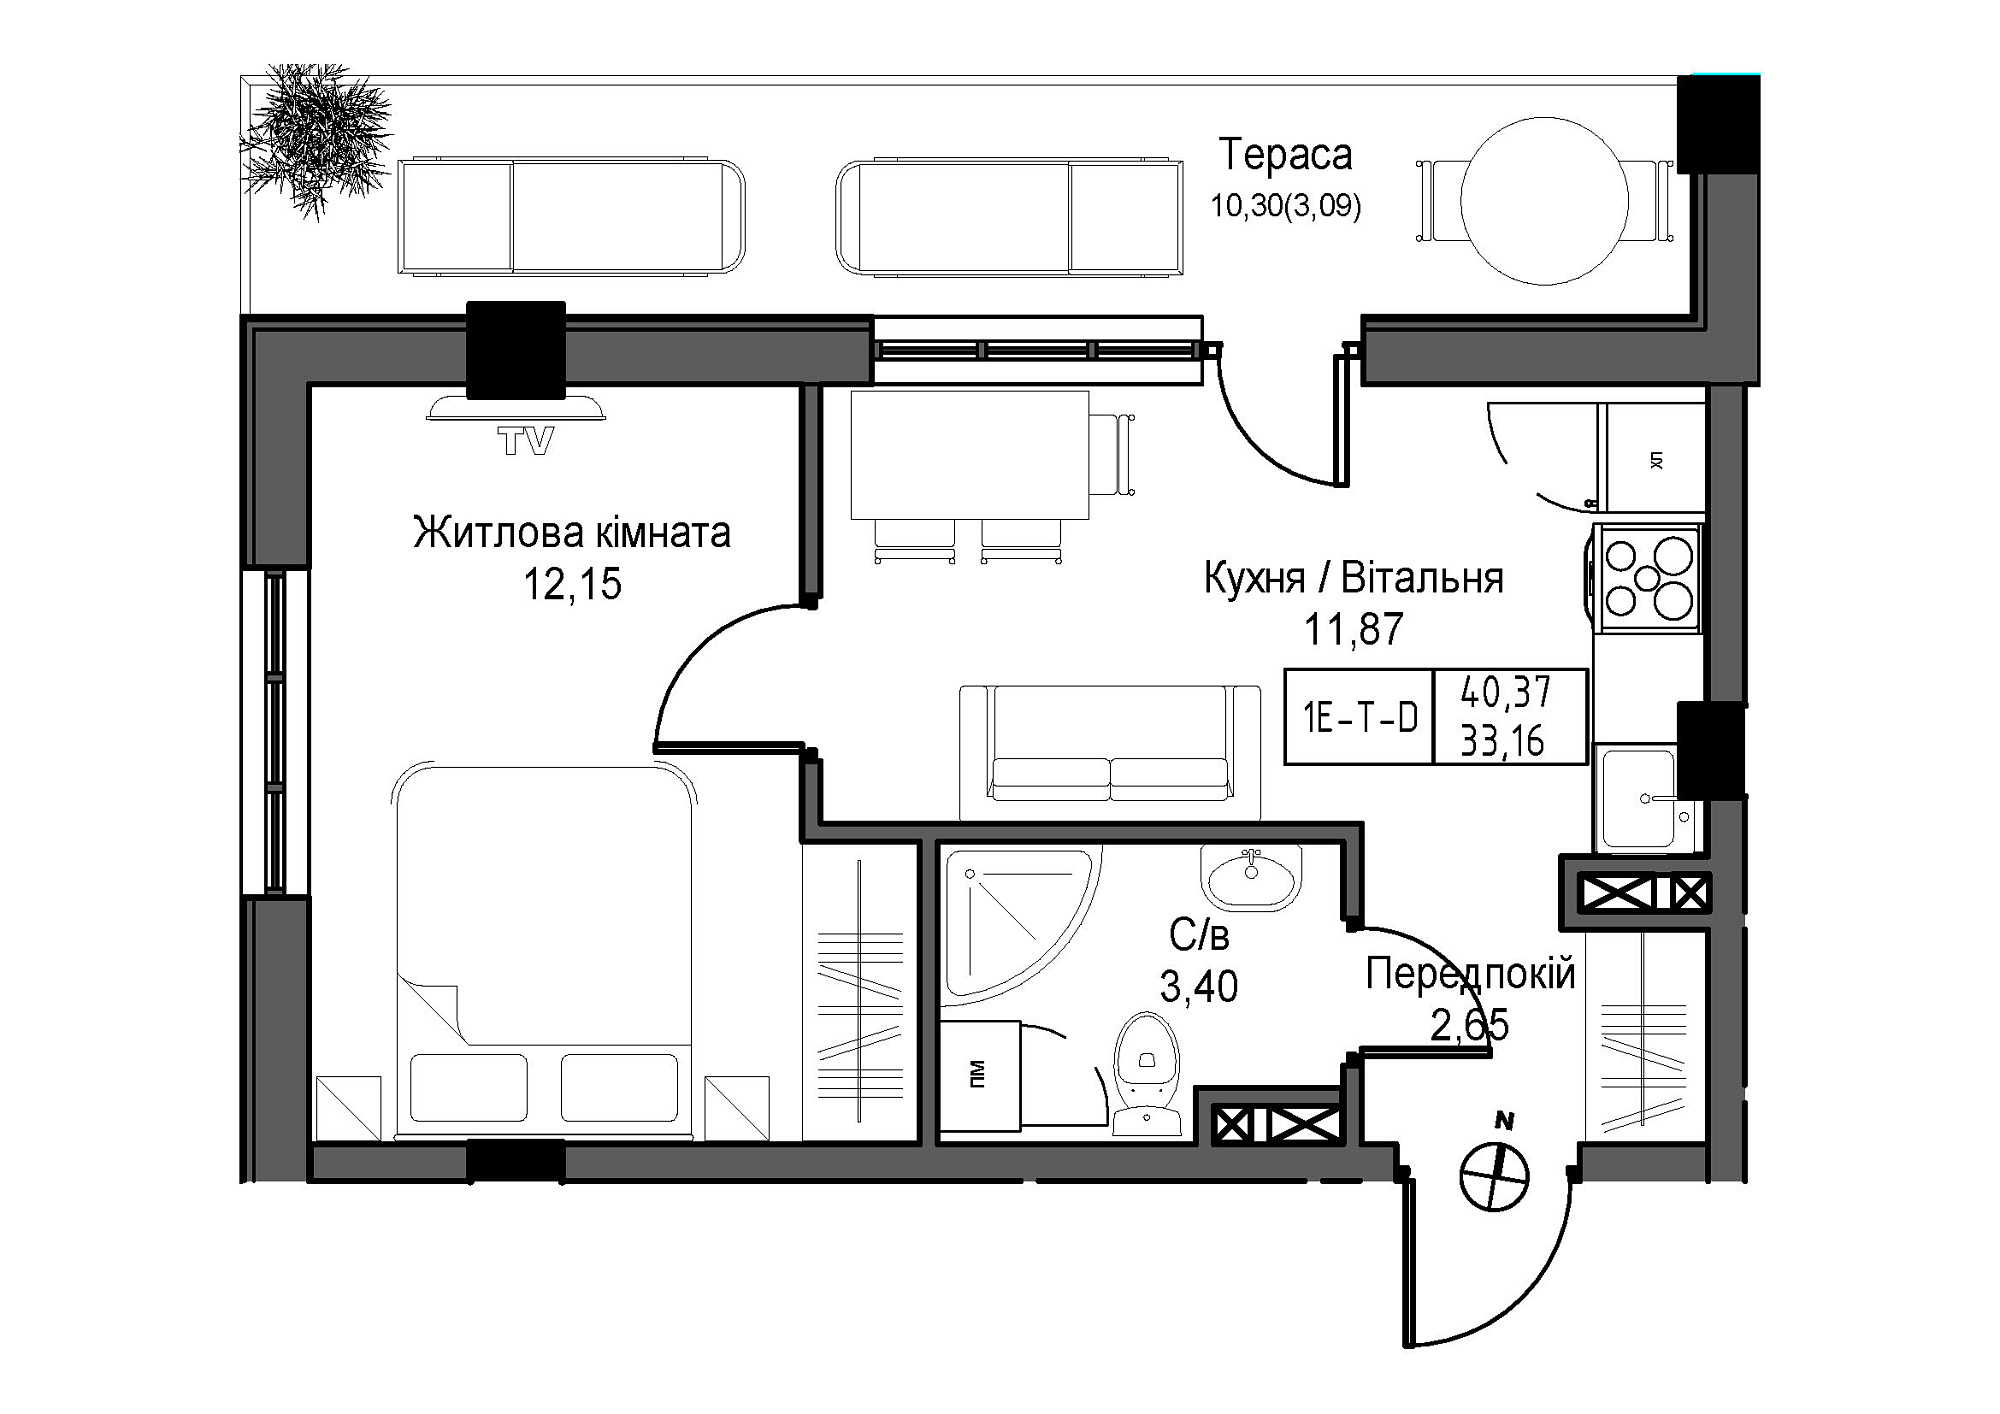 Планировка 1-к квартира площей 33.16м2, UM-007-06/0002.